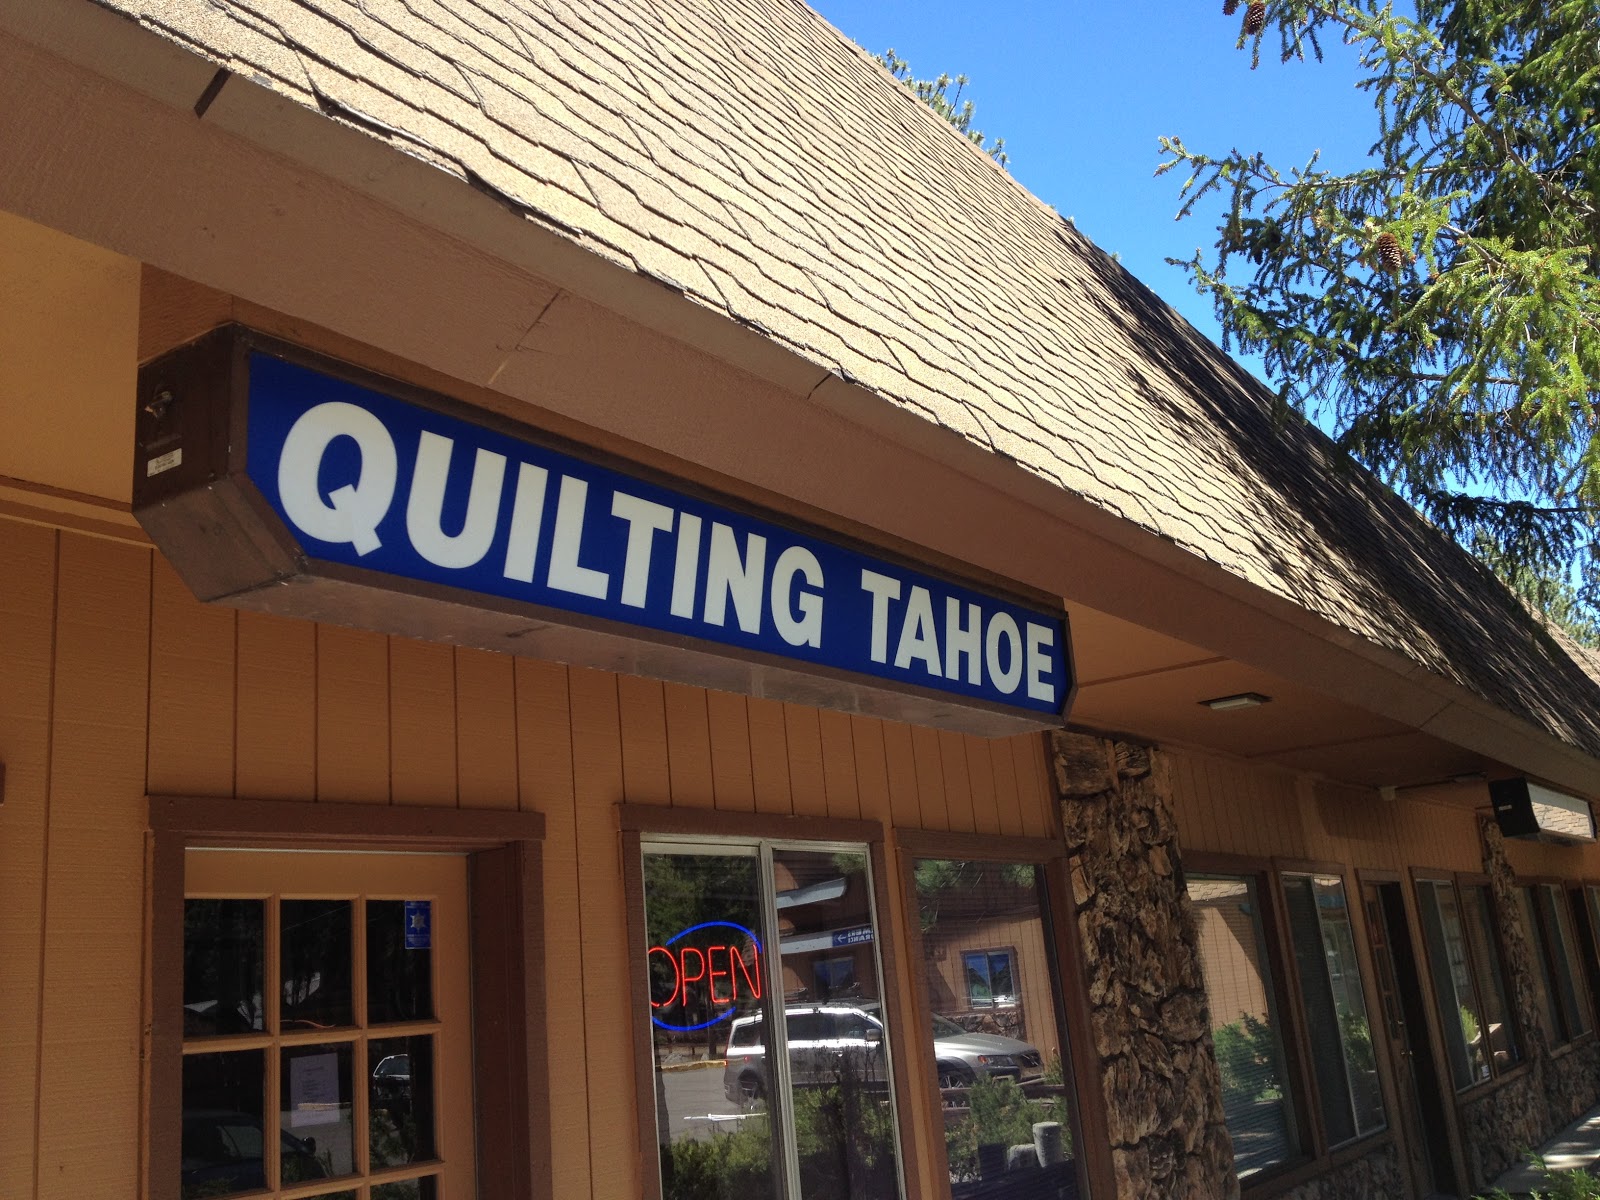 Quilting Tahoe